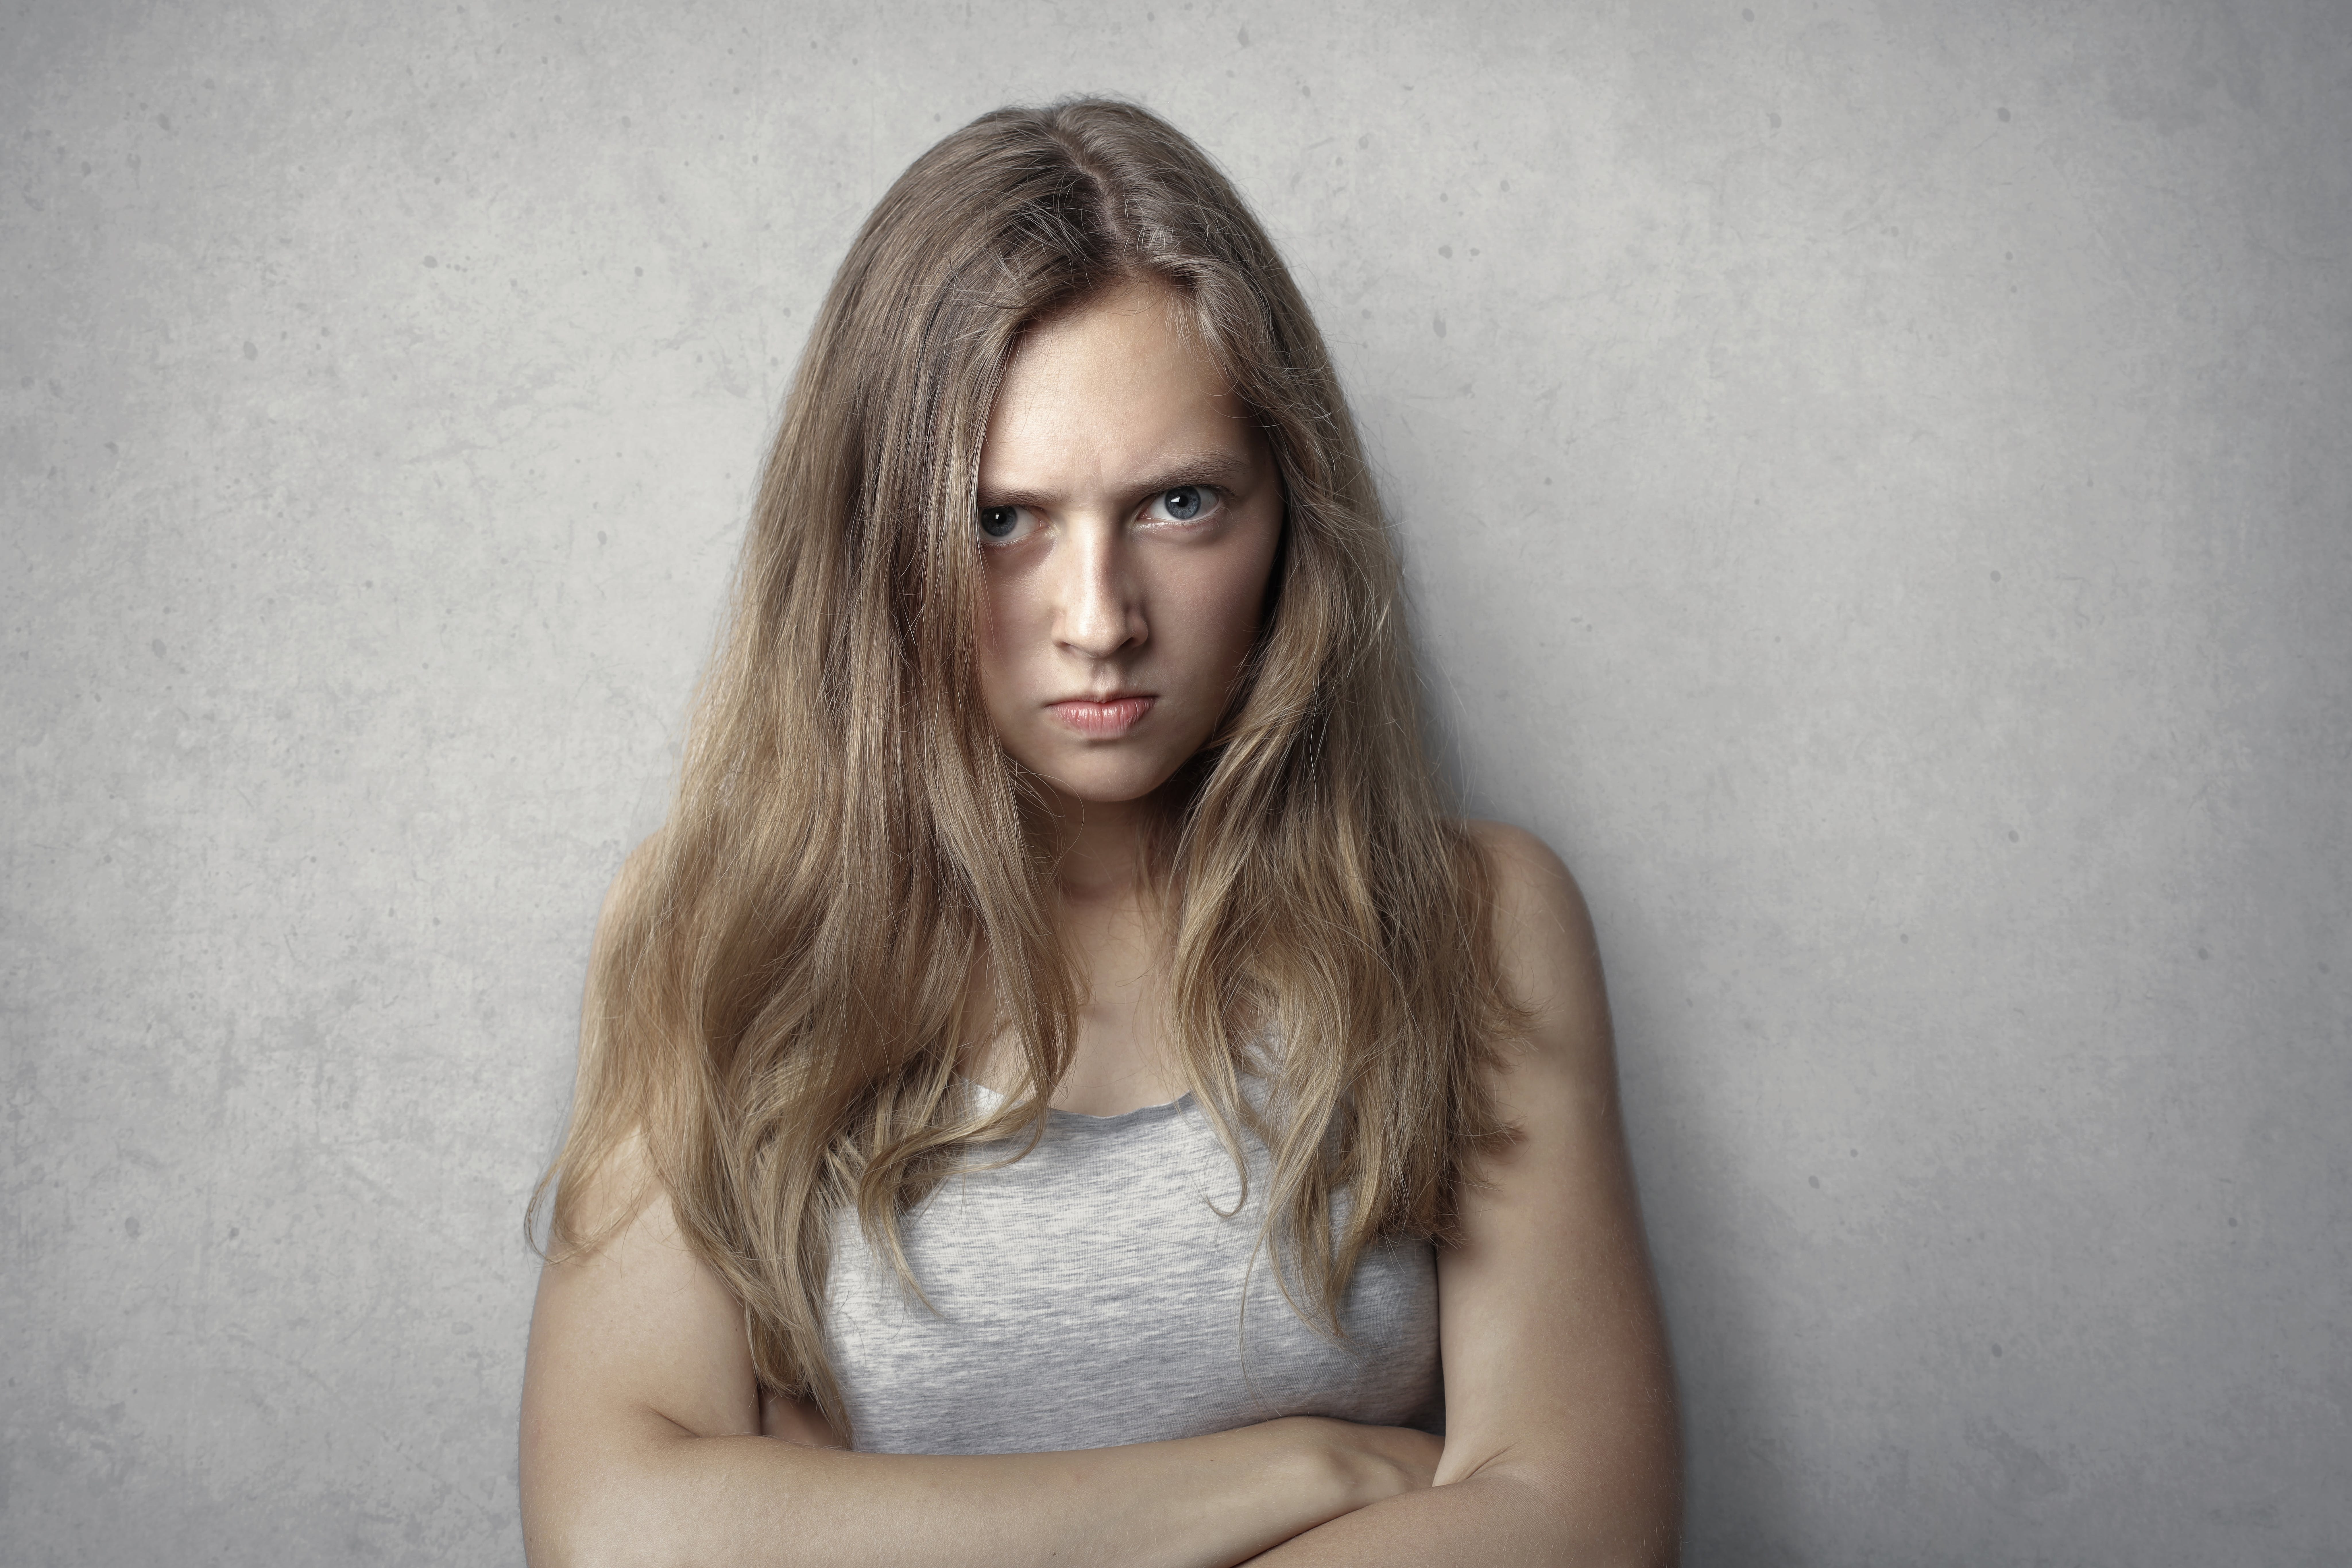 Une femme en colère debout, les bras croisés | Source : Pexels